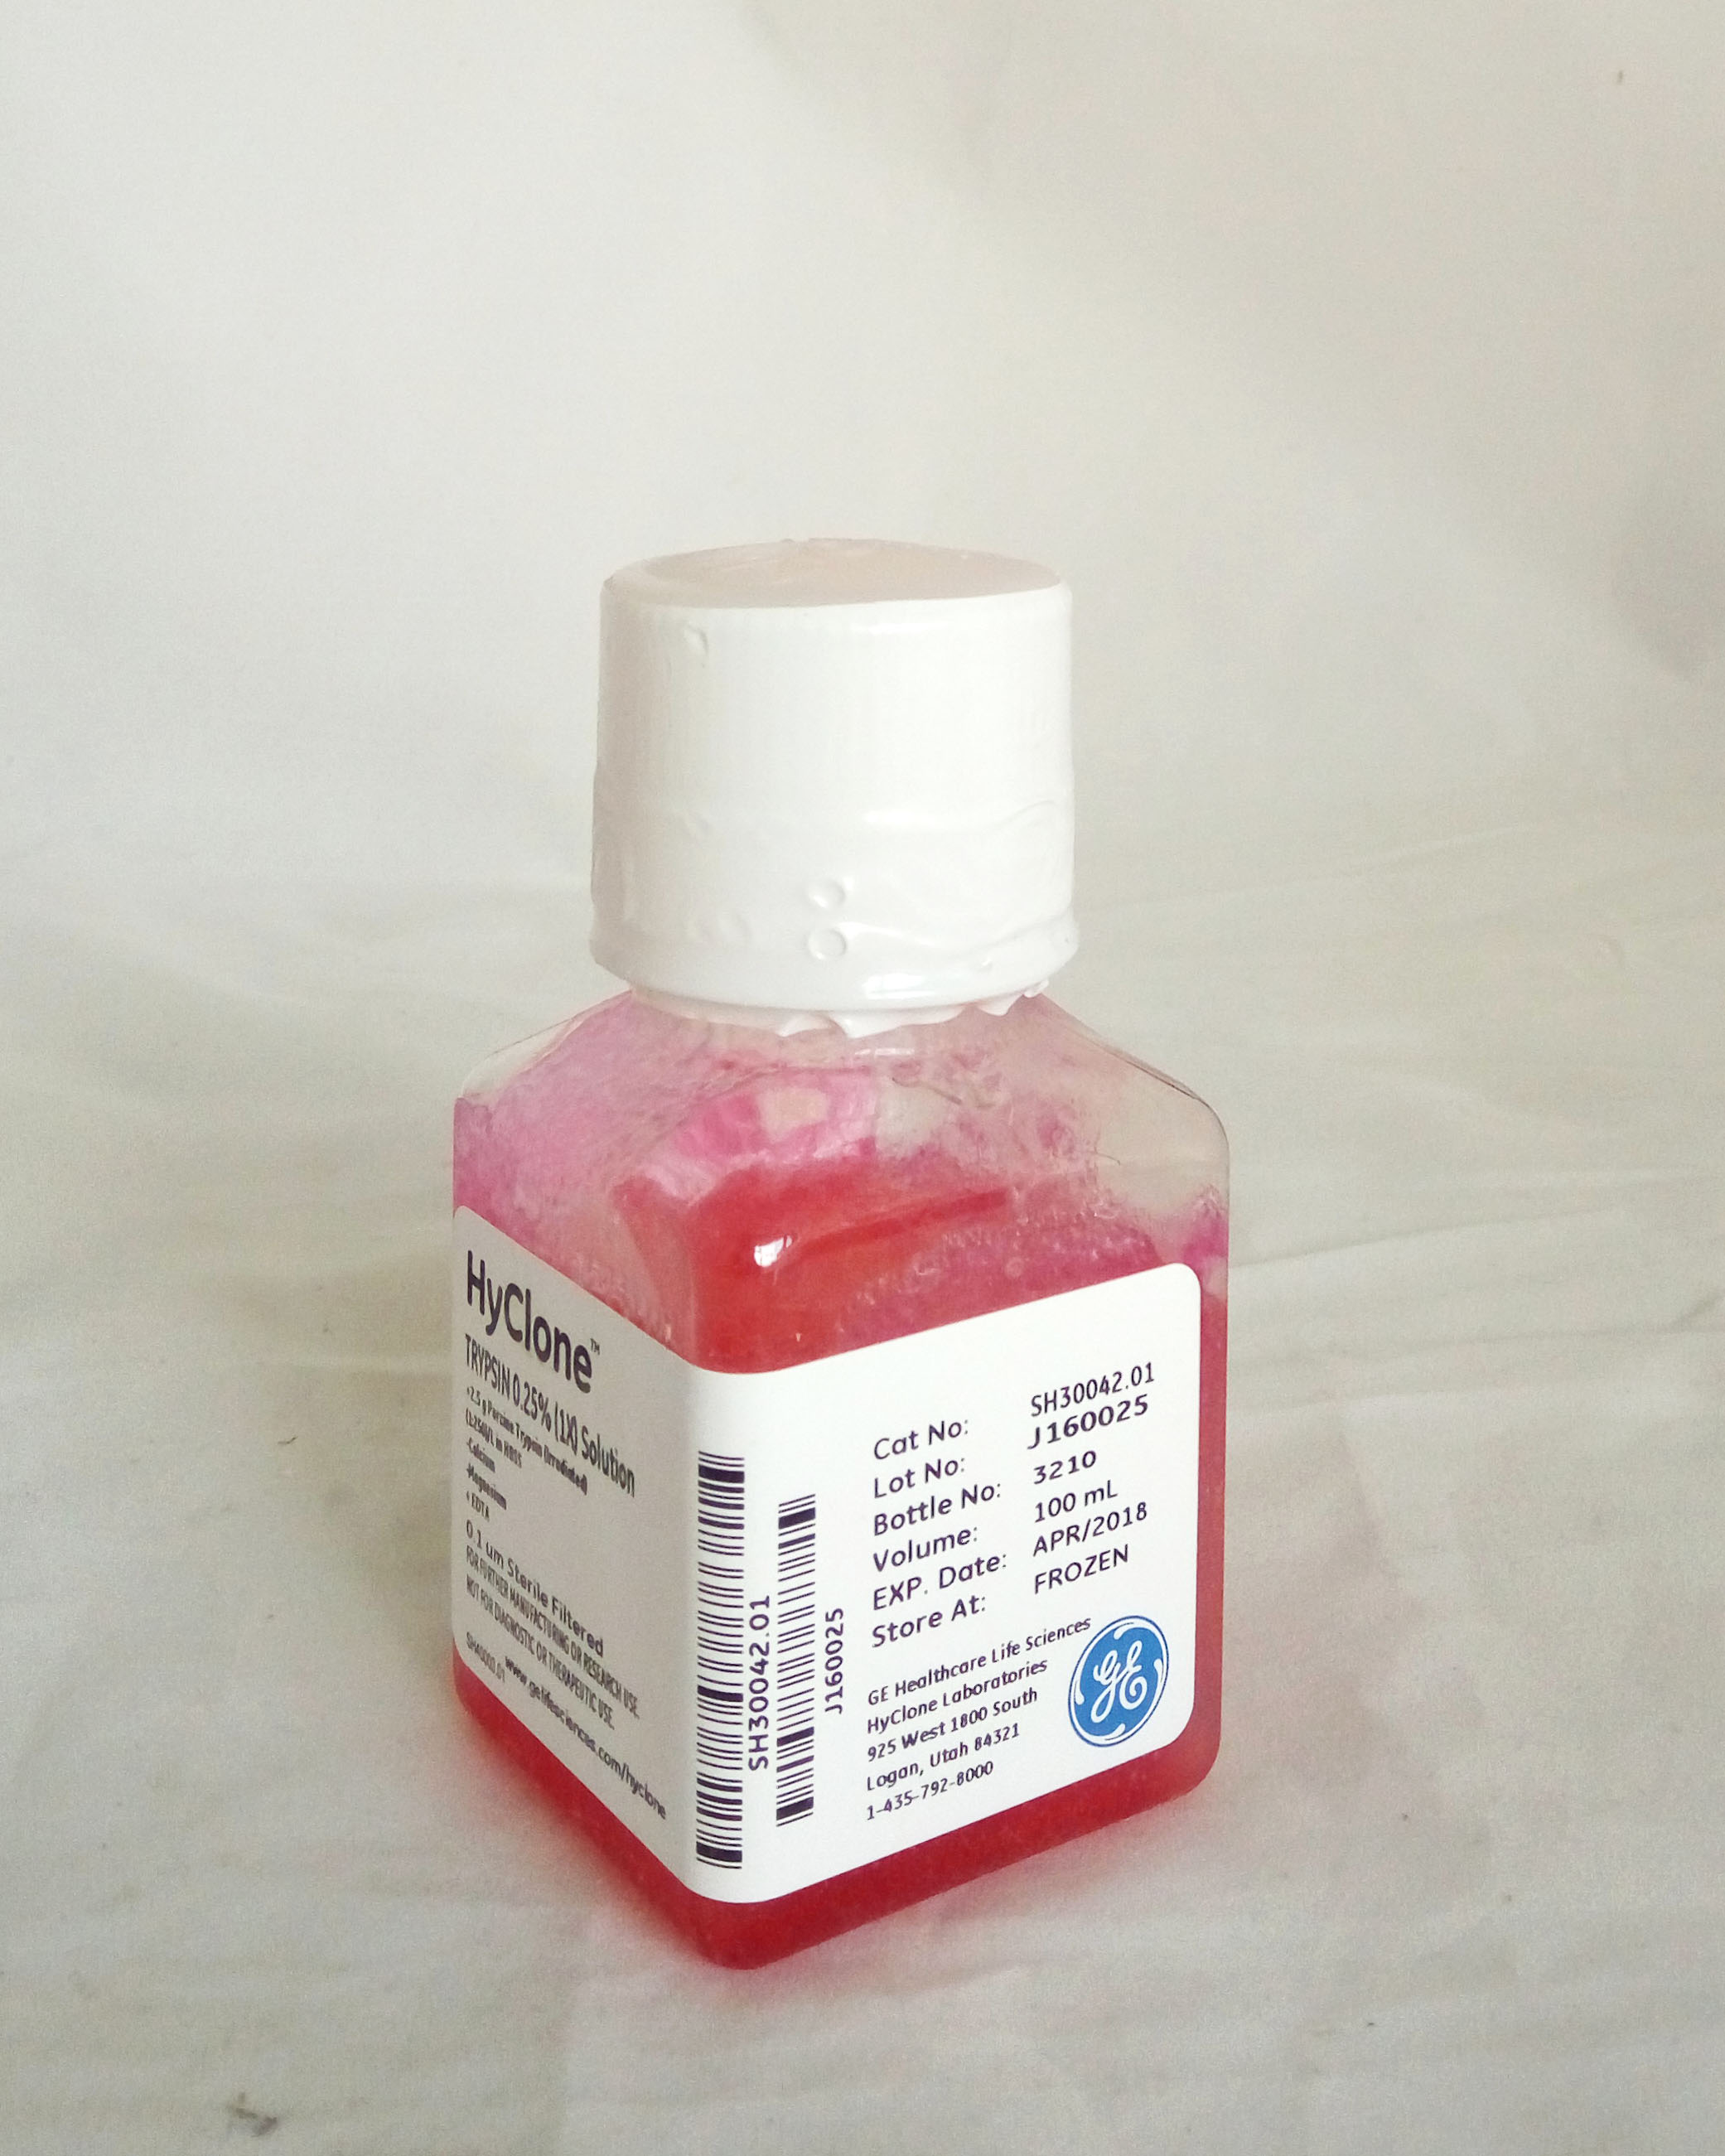 胰酶,胰蛋白酶/EDTA(Trypsin,0.25%)(美国原装进口)  100ml   SH30042.01   HyClone